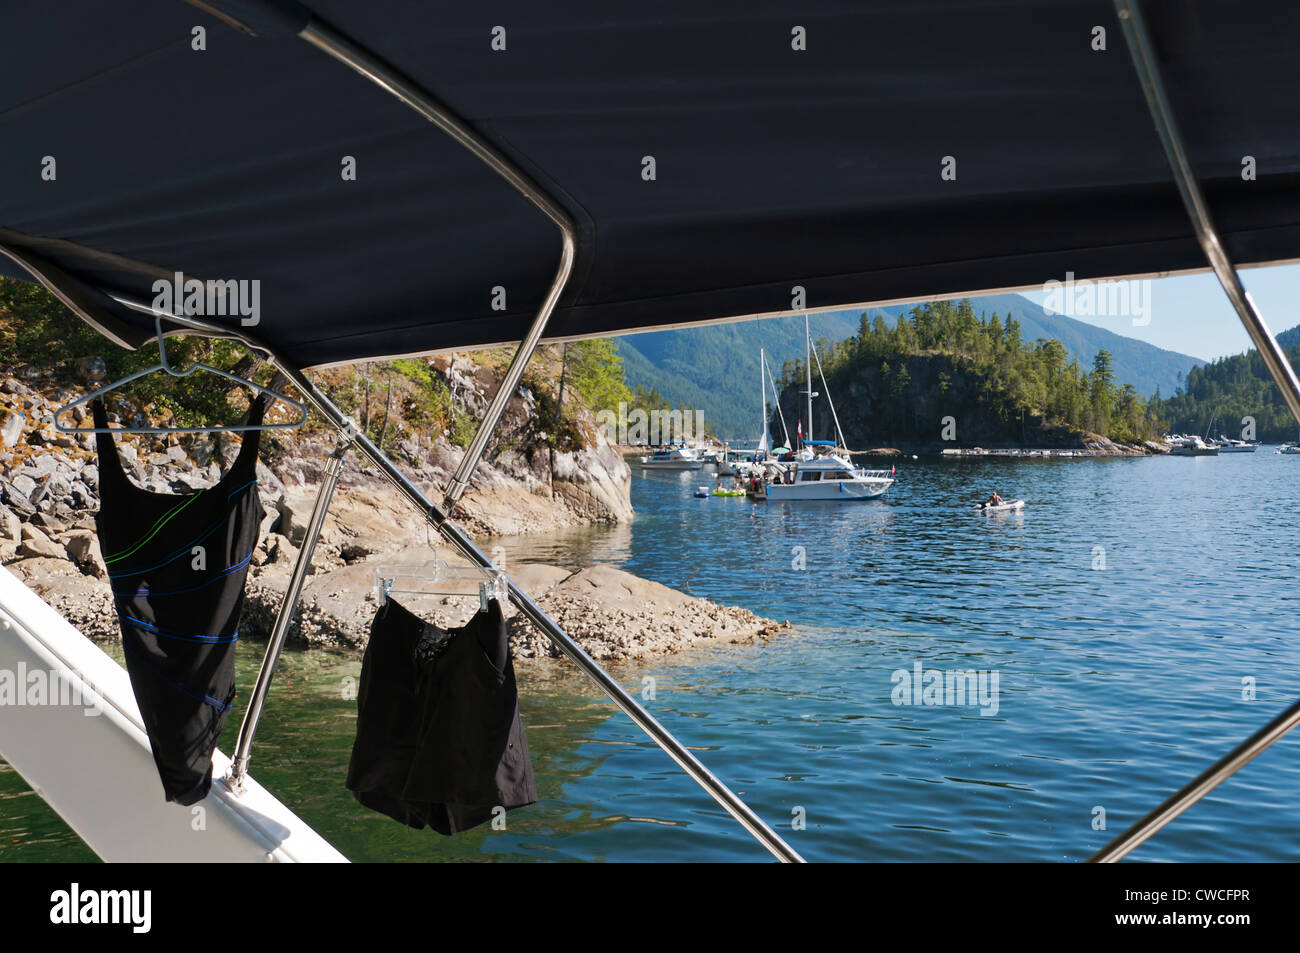 Un wet costume e pantaloncini appendere ad asciugare all'interno di una barca ancorata nelle acque calde del suono Pendrell su una bella giornata d'estate. Foto Stock